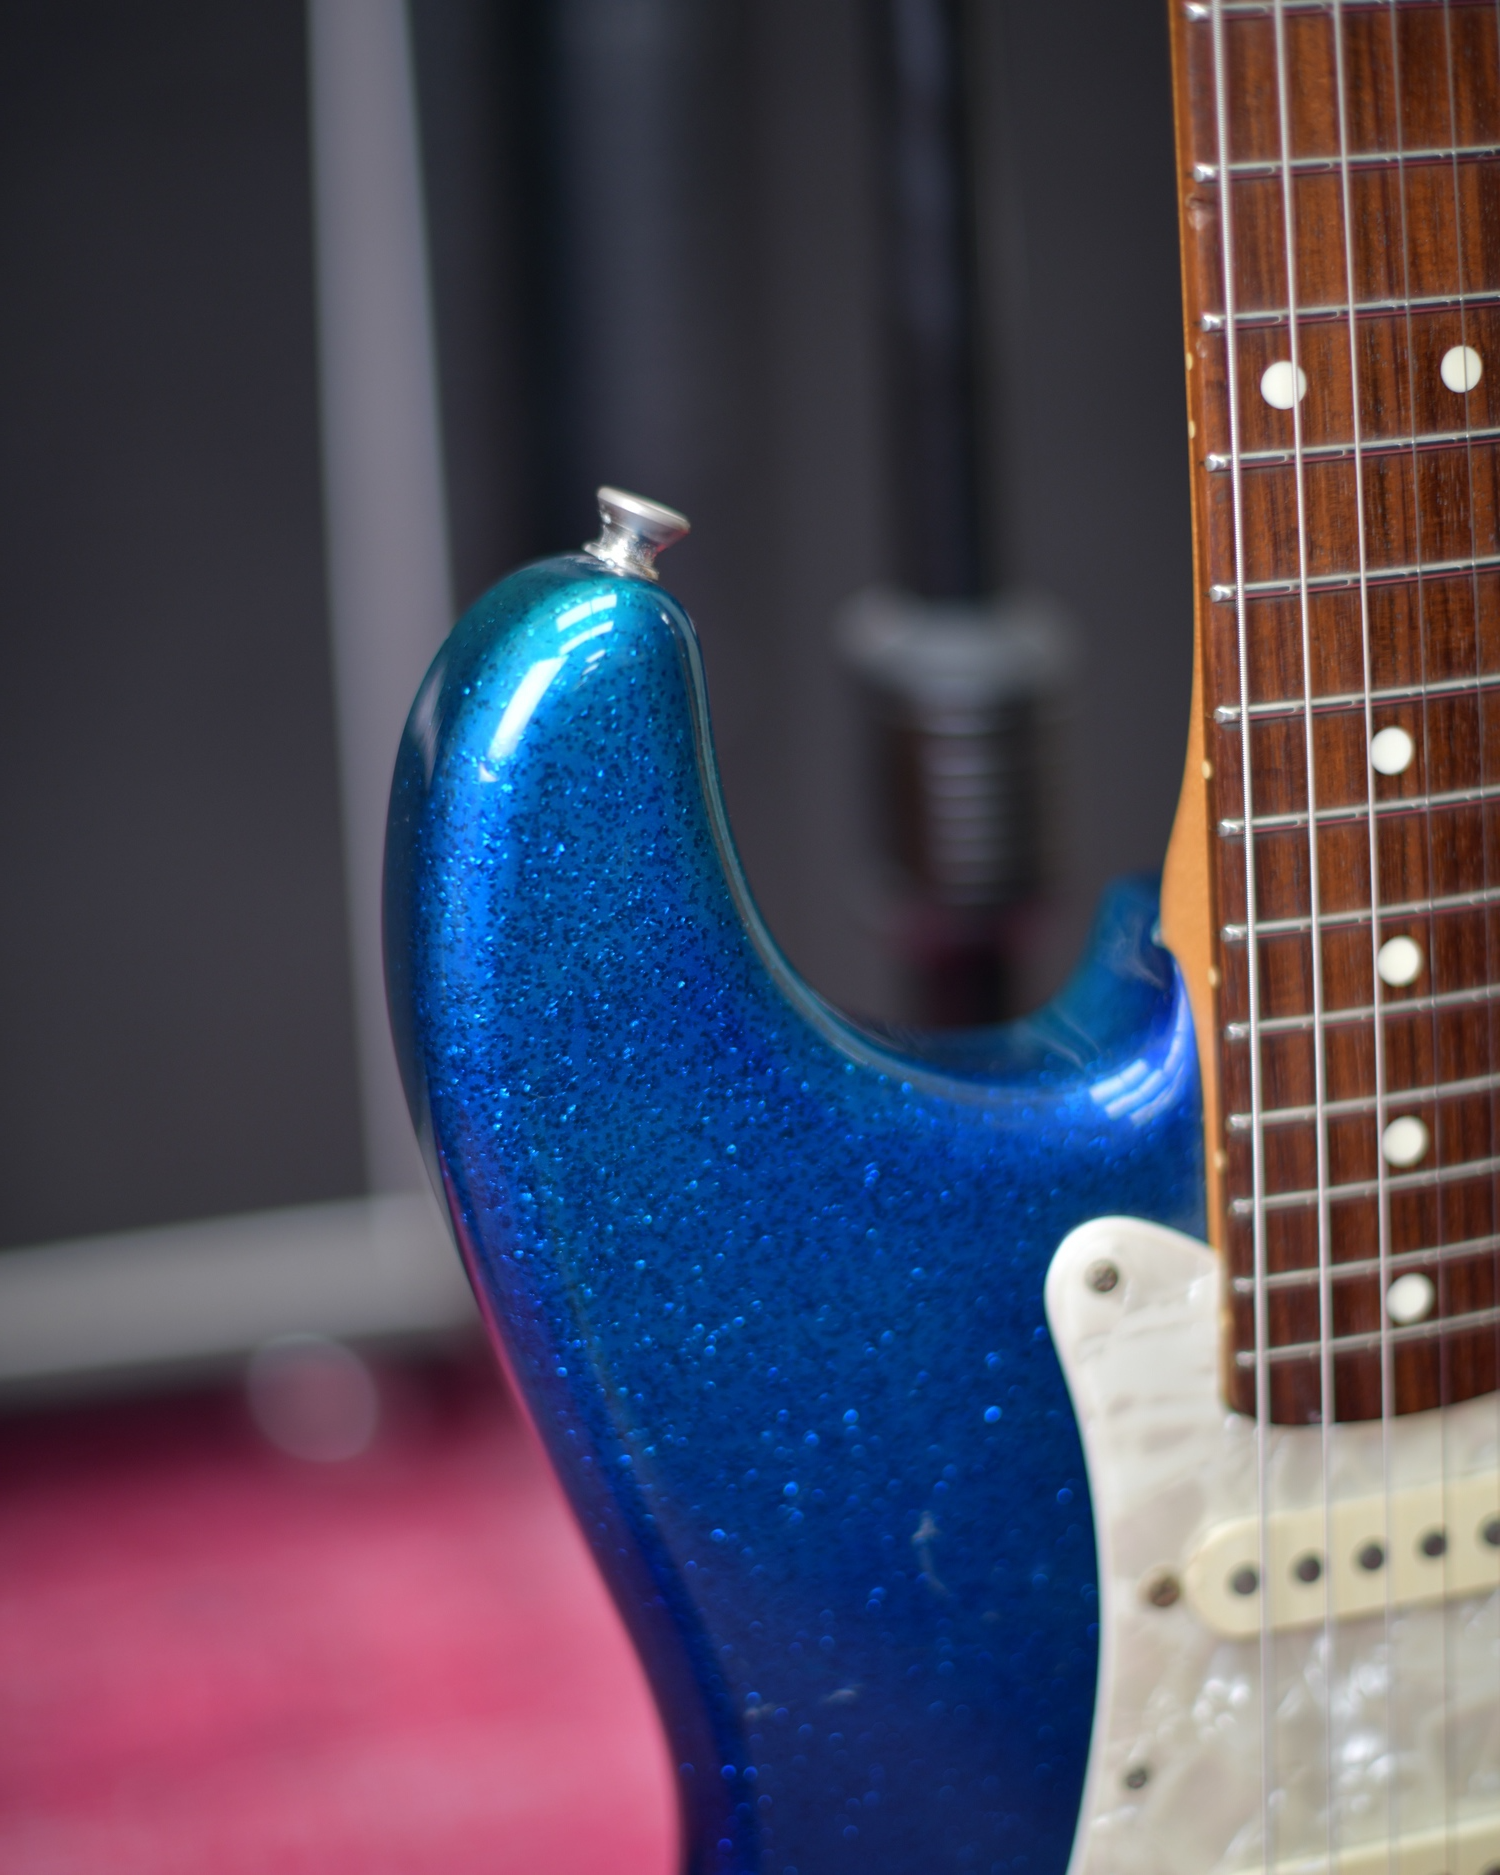 Fender Japan Stratocaster Blue Sparkle N Serial 1993 Fujigen